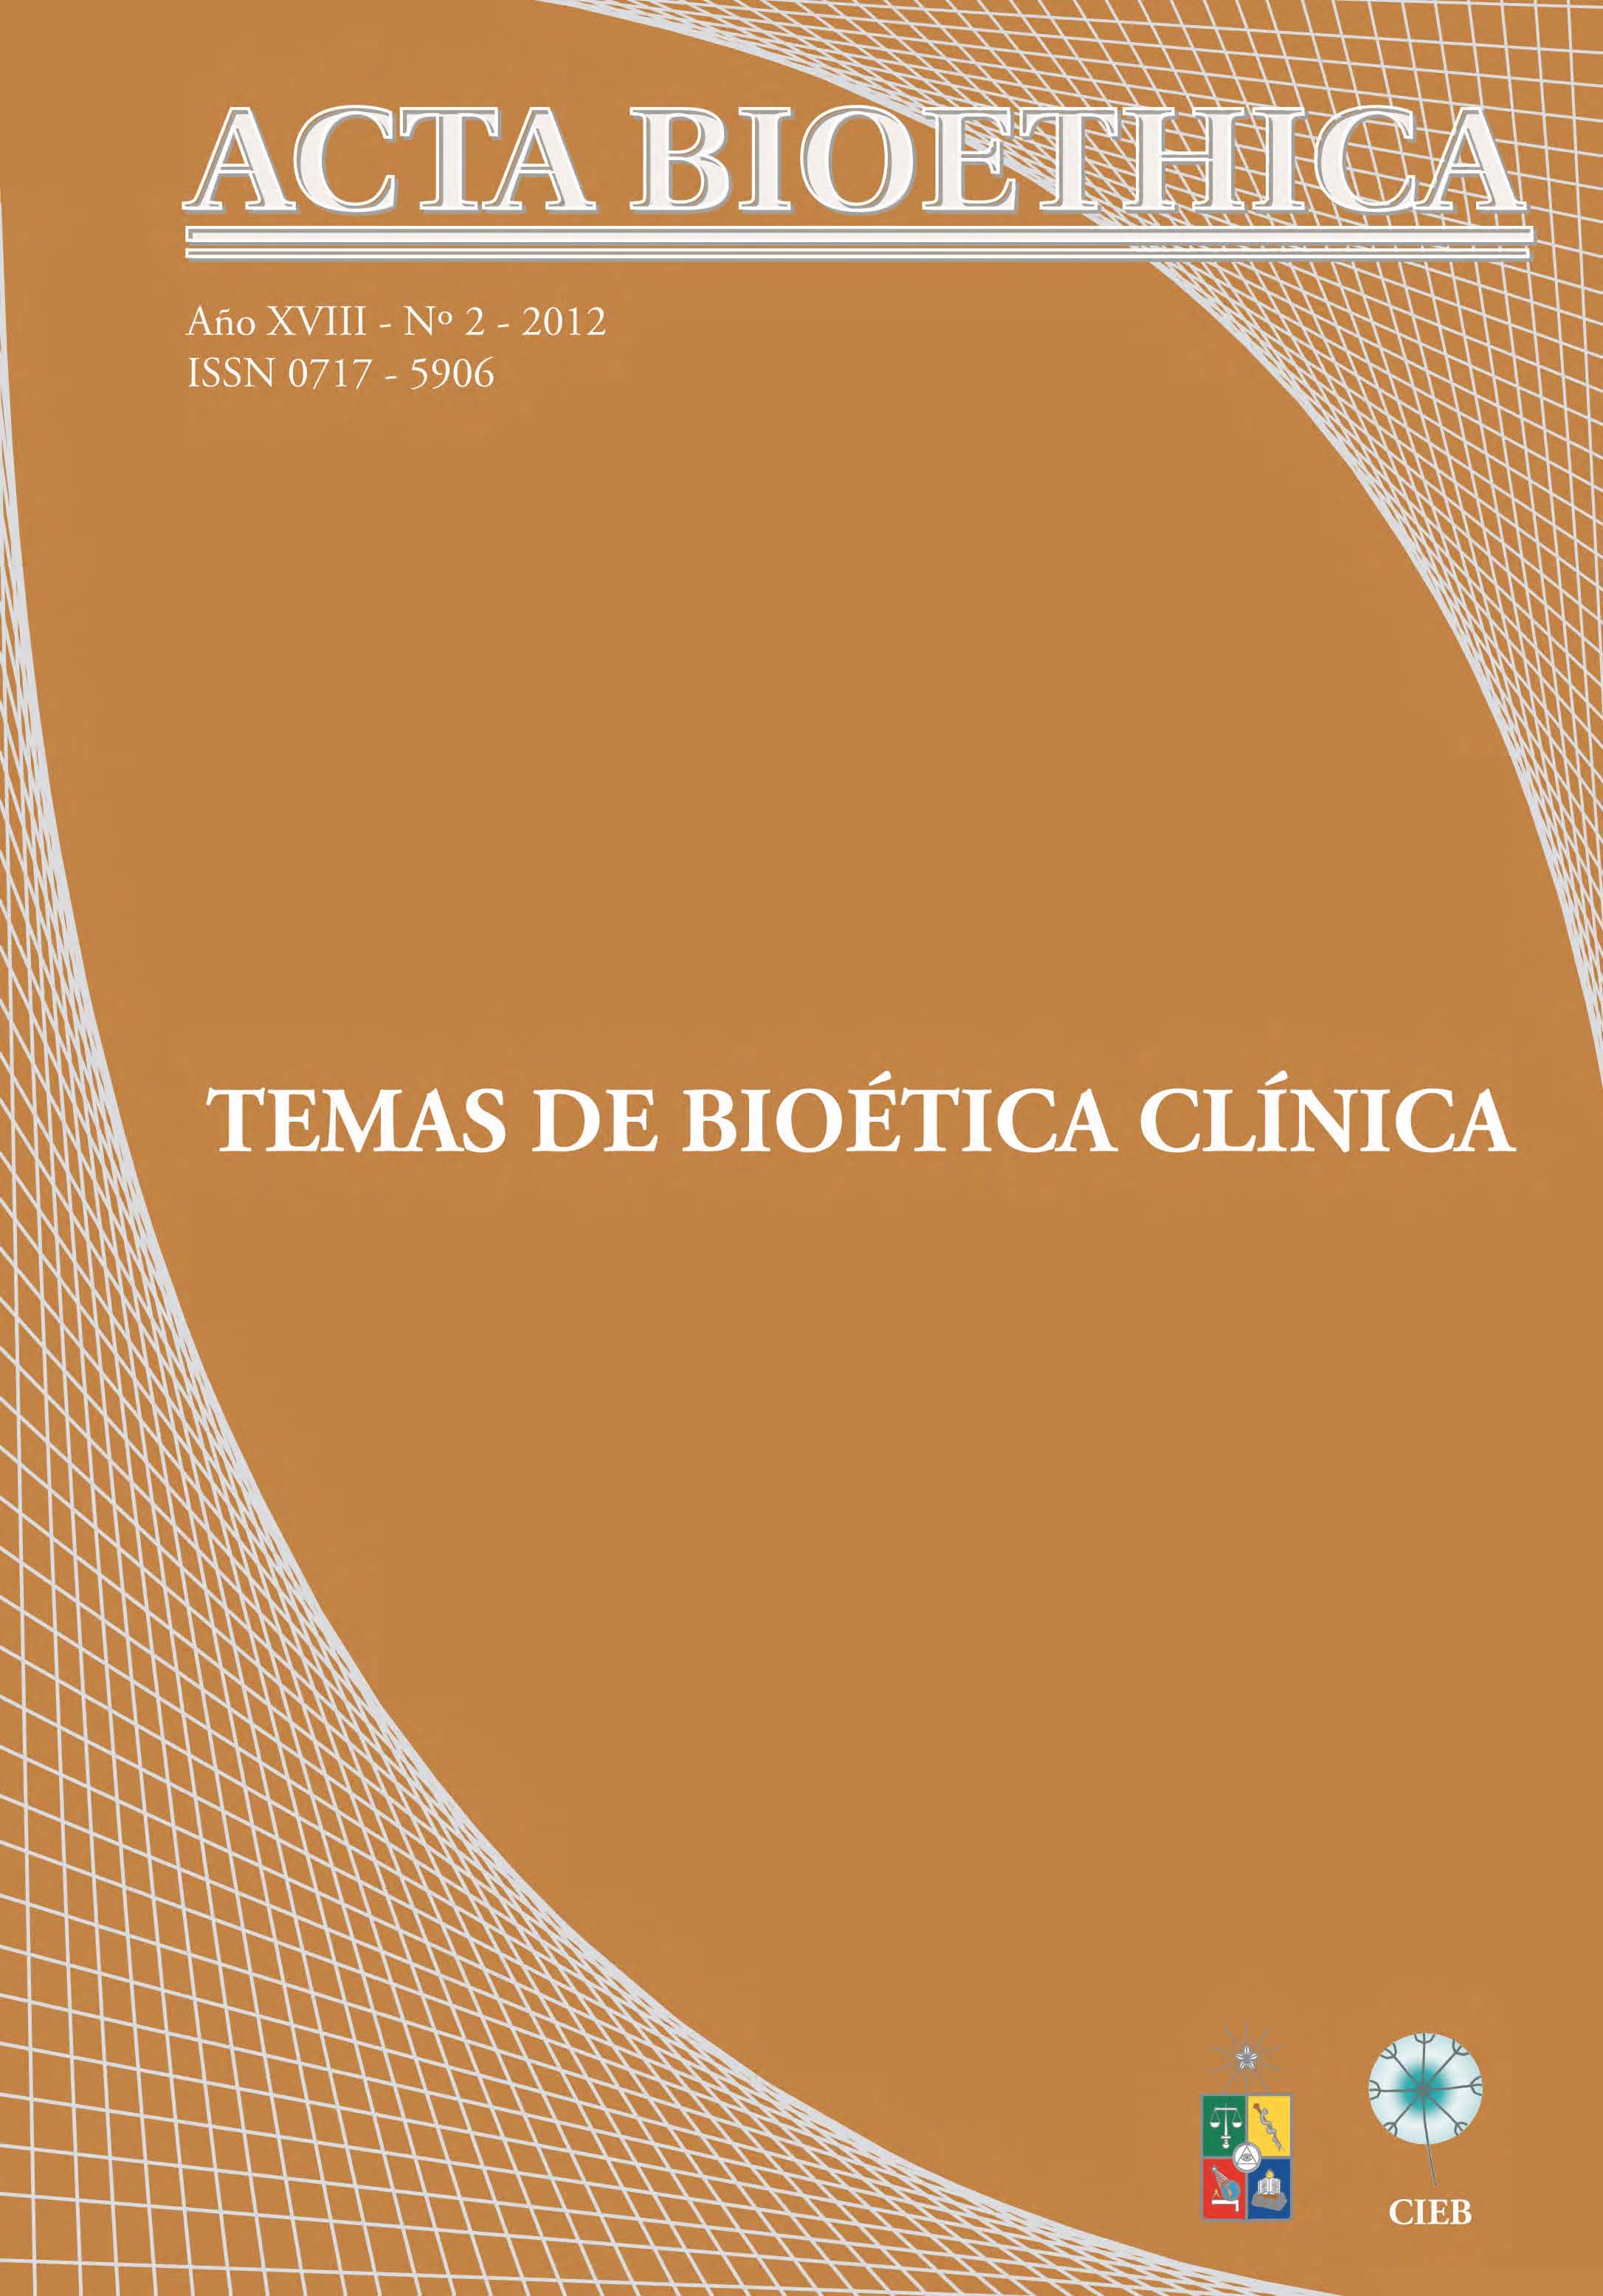 							Ver Vol. 18 Núm. 2 (2012): Temas de Bioética Clínica
						